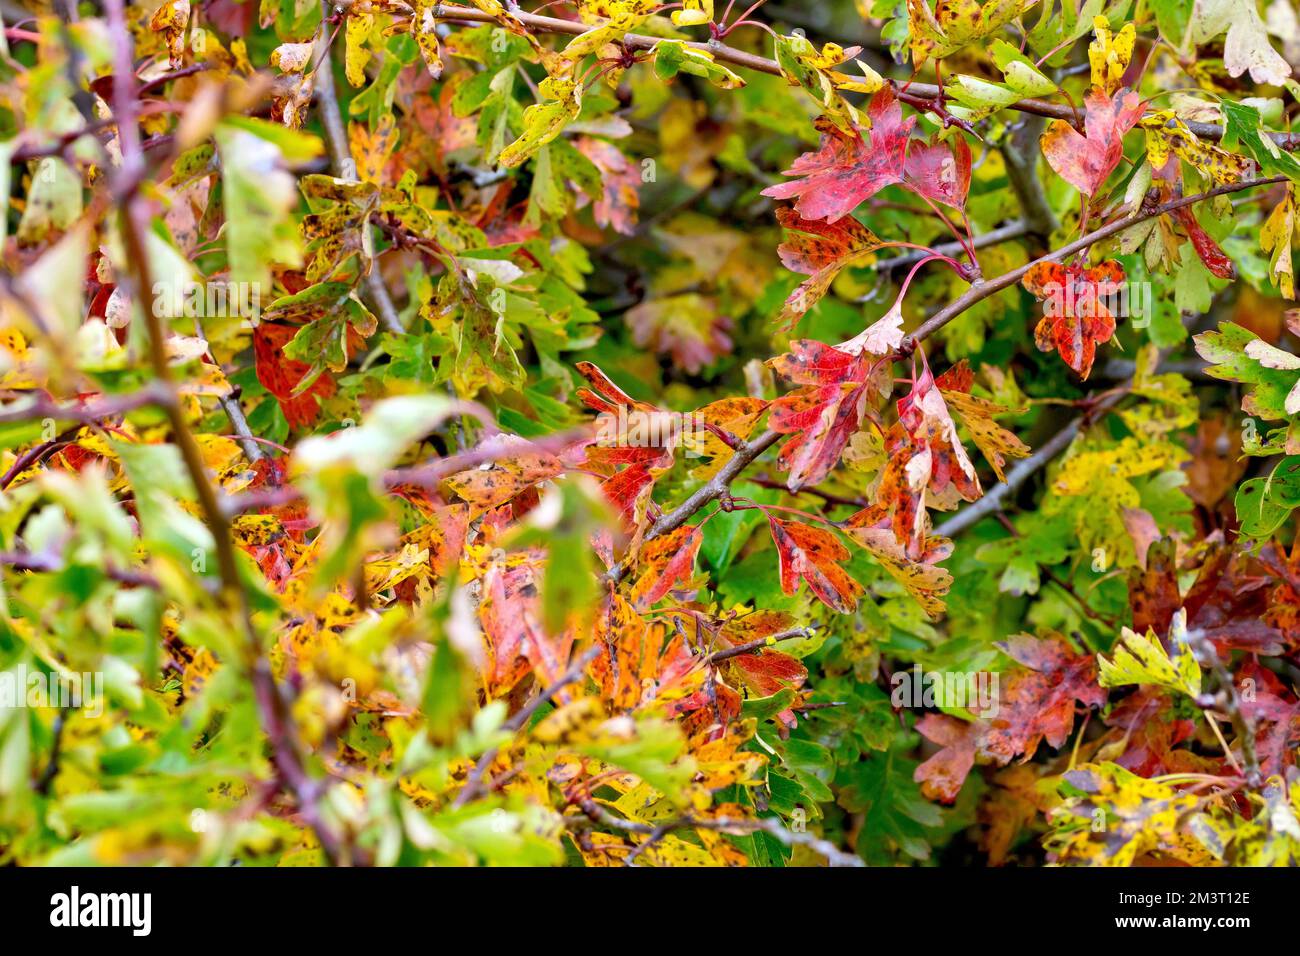 Espino blanco o árbol de mayo (crataegus monogyna), cerca mostrando las hojas del arbusto a medida que cambian de color en el otoño. Foto de stock